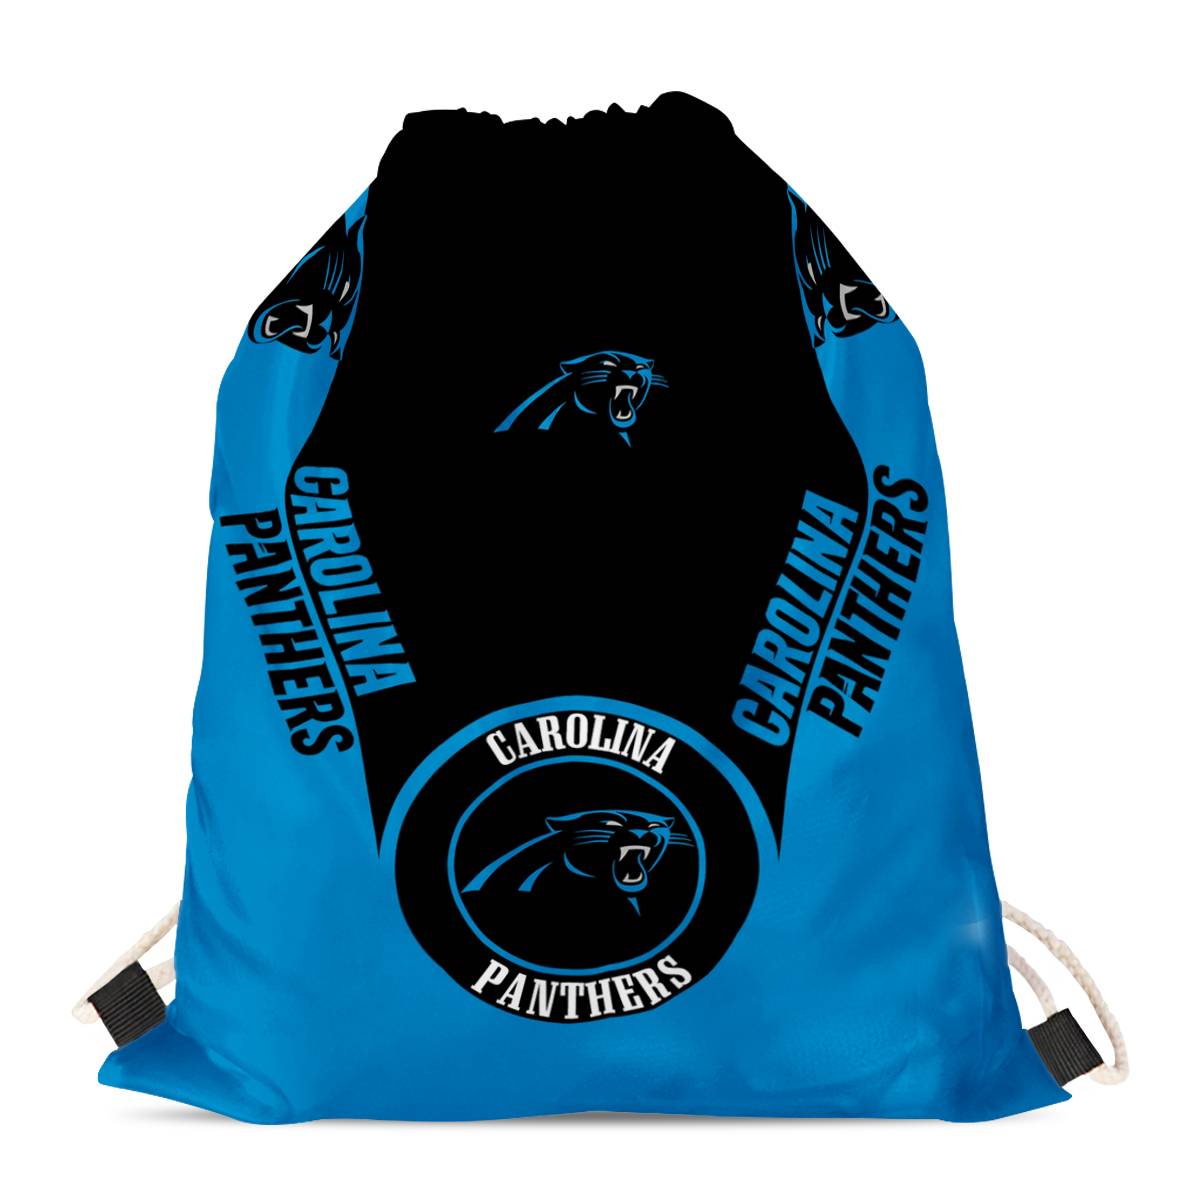 Carolina Panthers Drawstring Backpack sack / Gym bag 18" x 14" 001